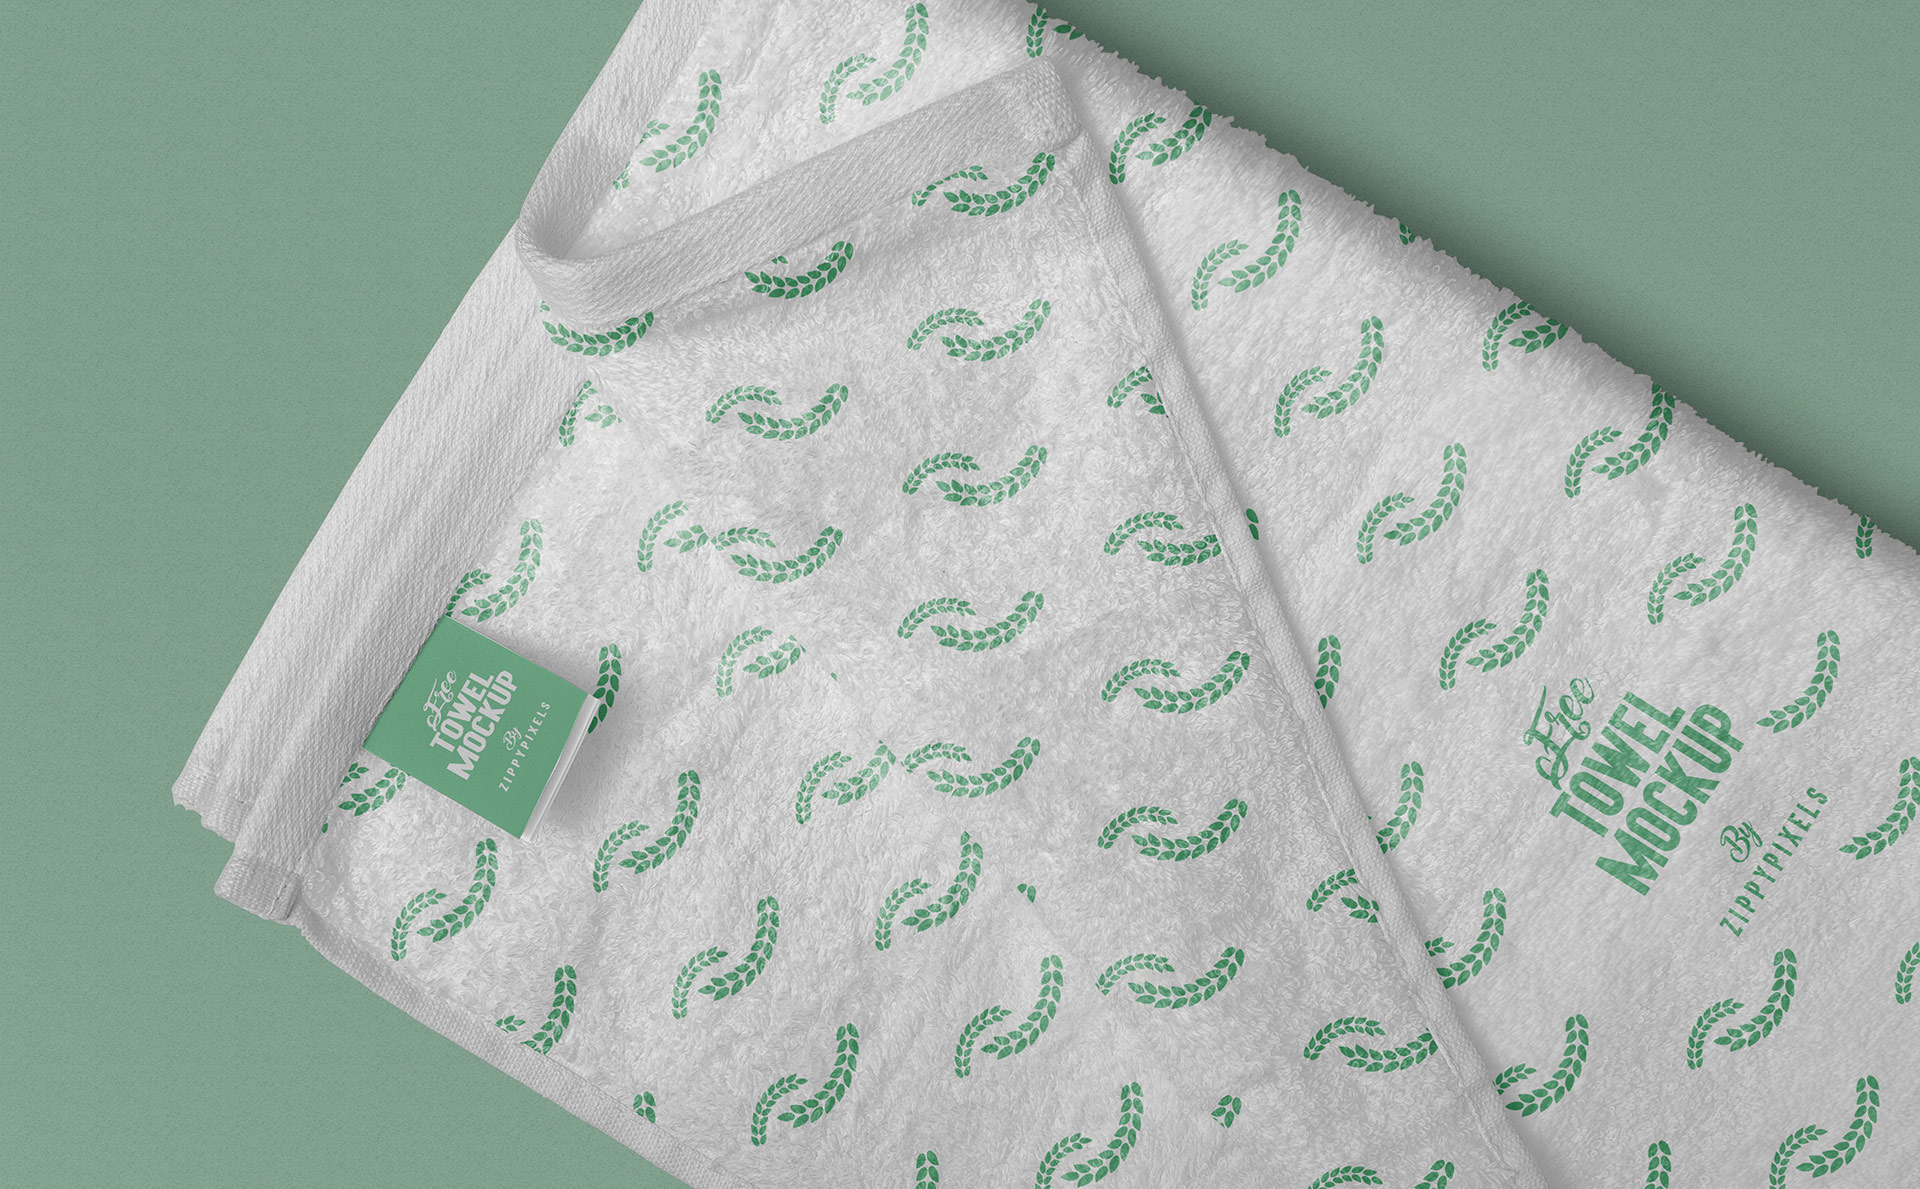 优雅全毛巾logo样机 Elegant Full Towel Logo Prototype插图1